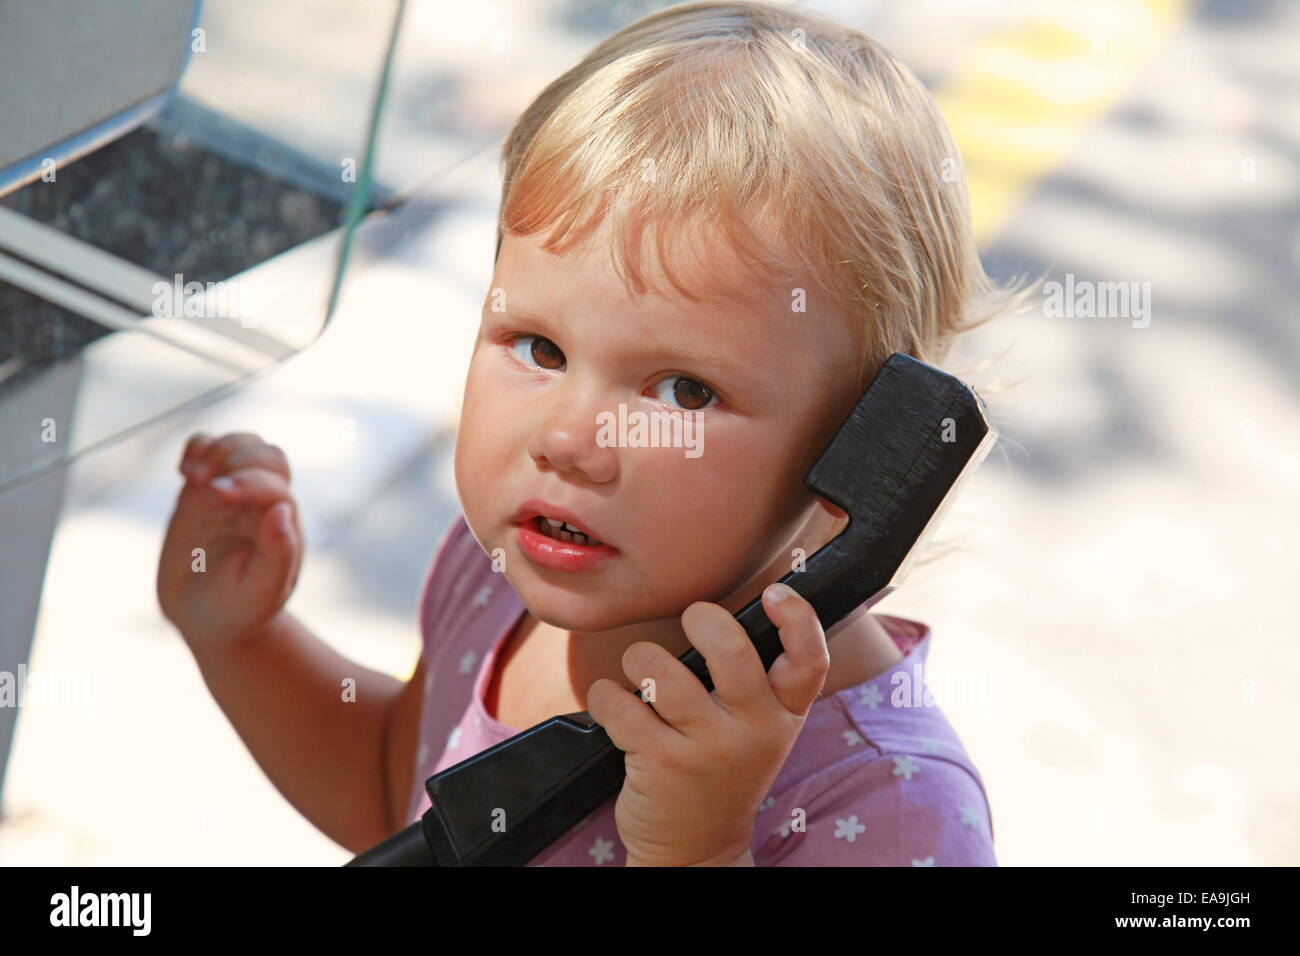 Bambina al telefono immagini e fotografie stock ad alta risoluzione - Alamy